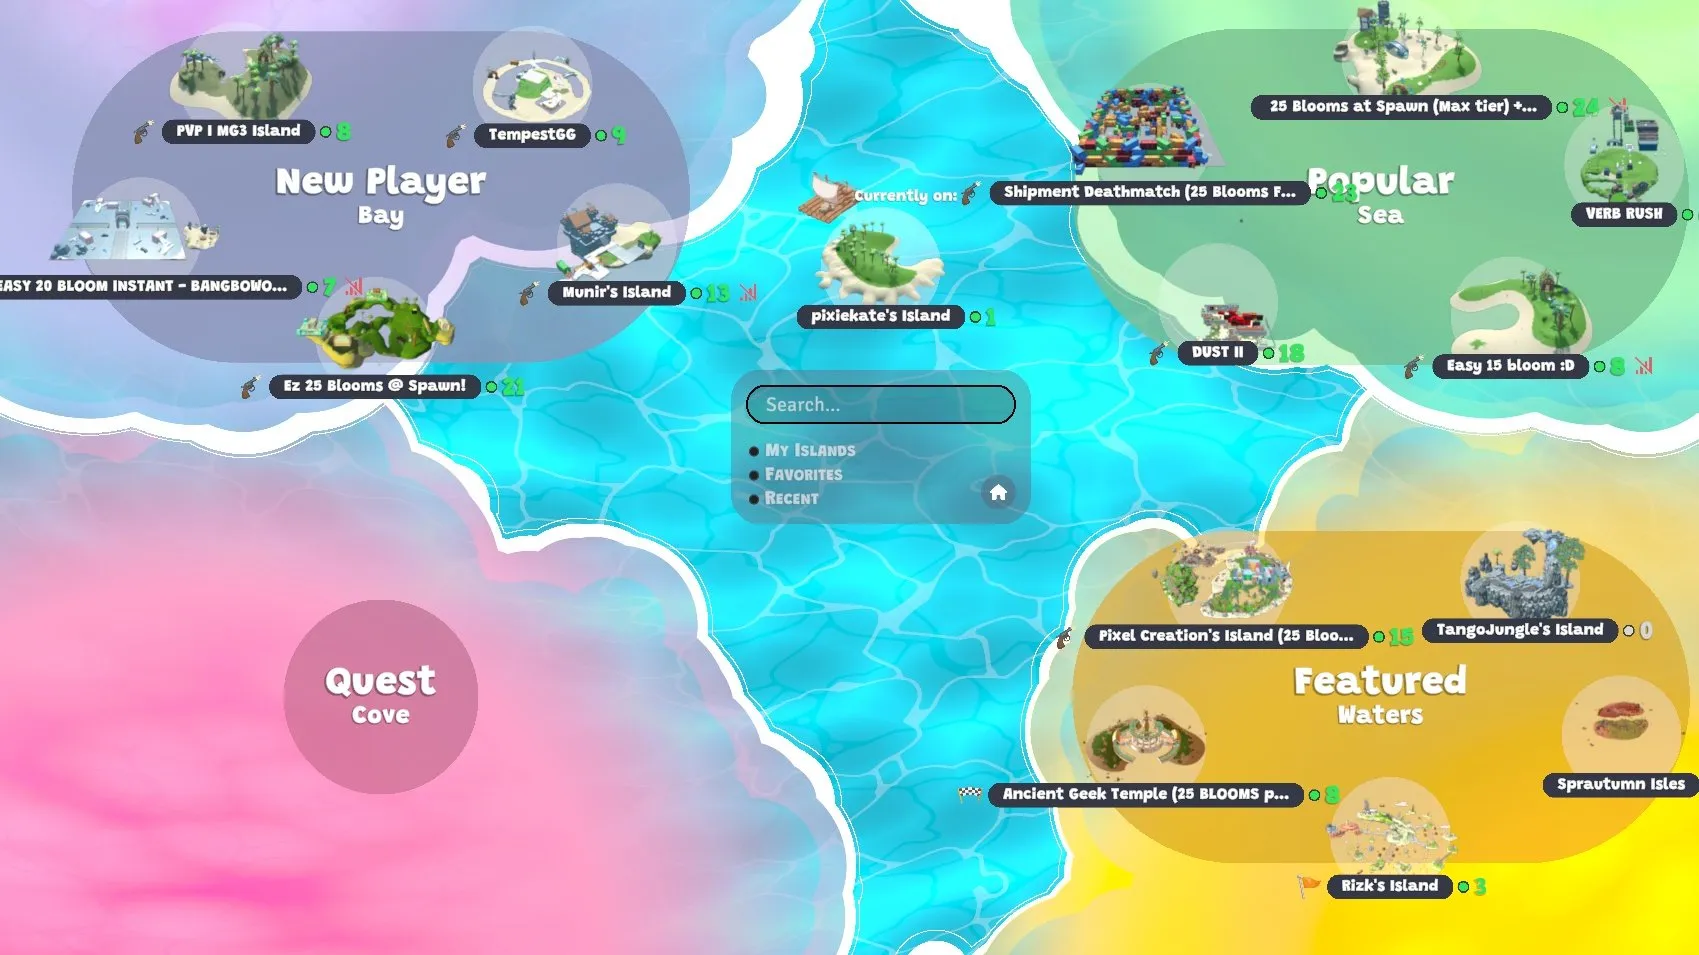 Capture d'écran du jeu montrant une carte avec les îles populaires, l'île « en vedette » et les îles destinées aux nouveaux joueurs.